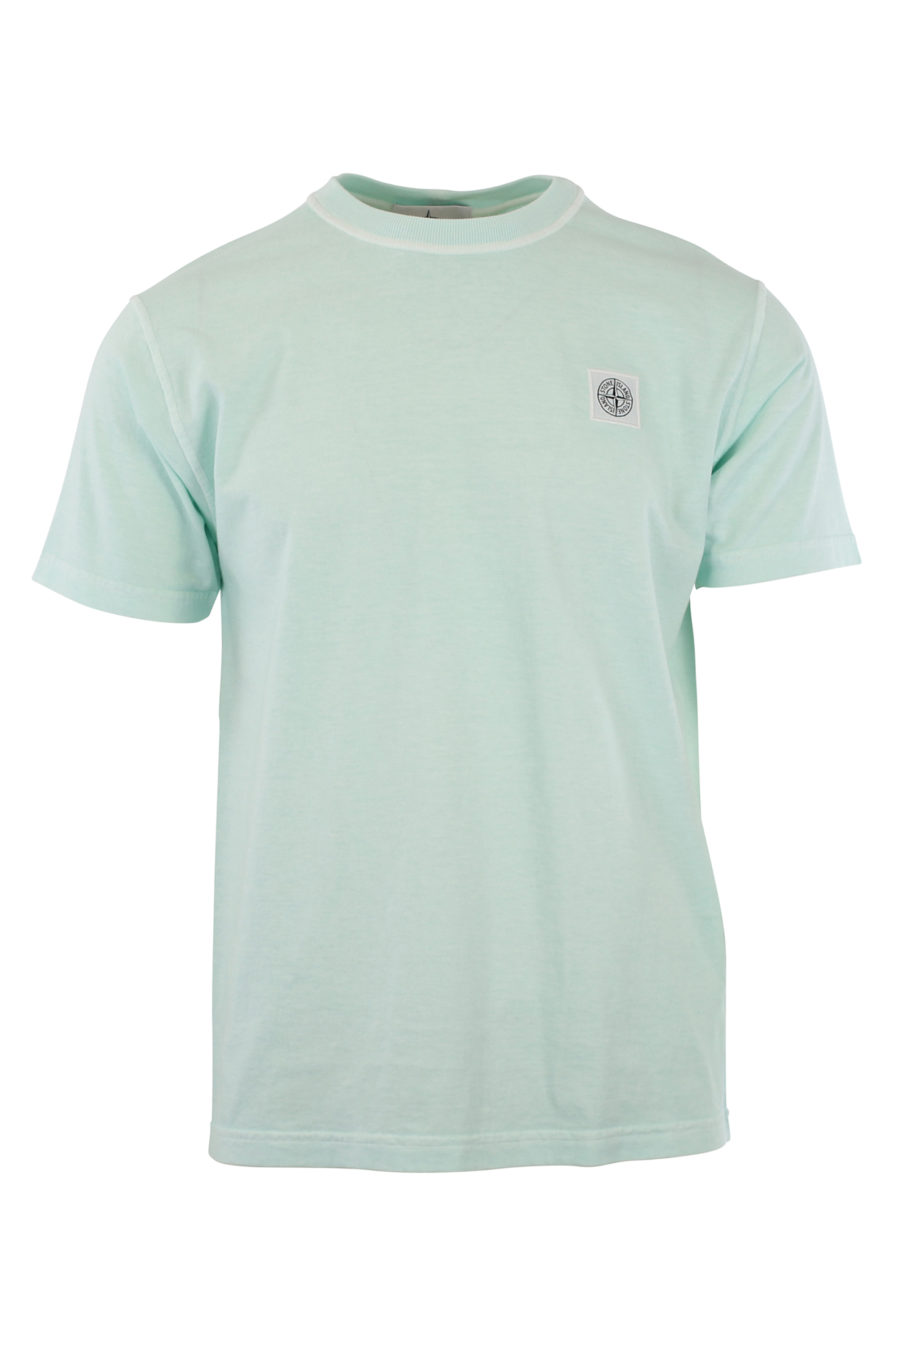 T-shirt azul com logótipo - IMG 9640